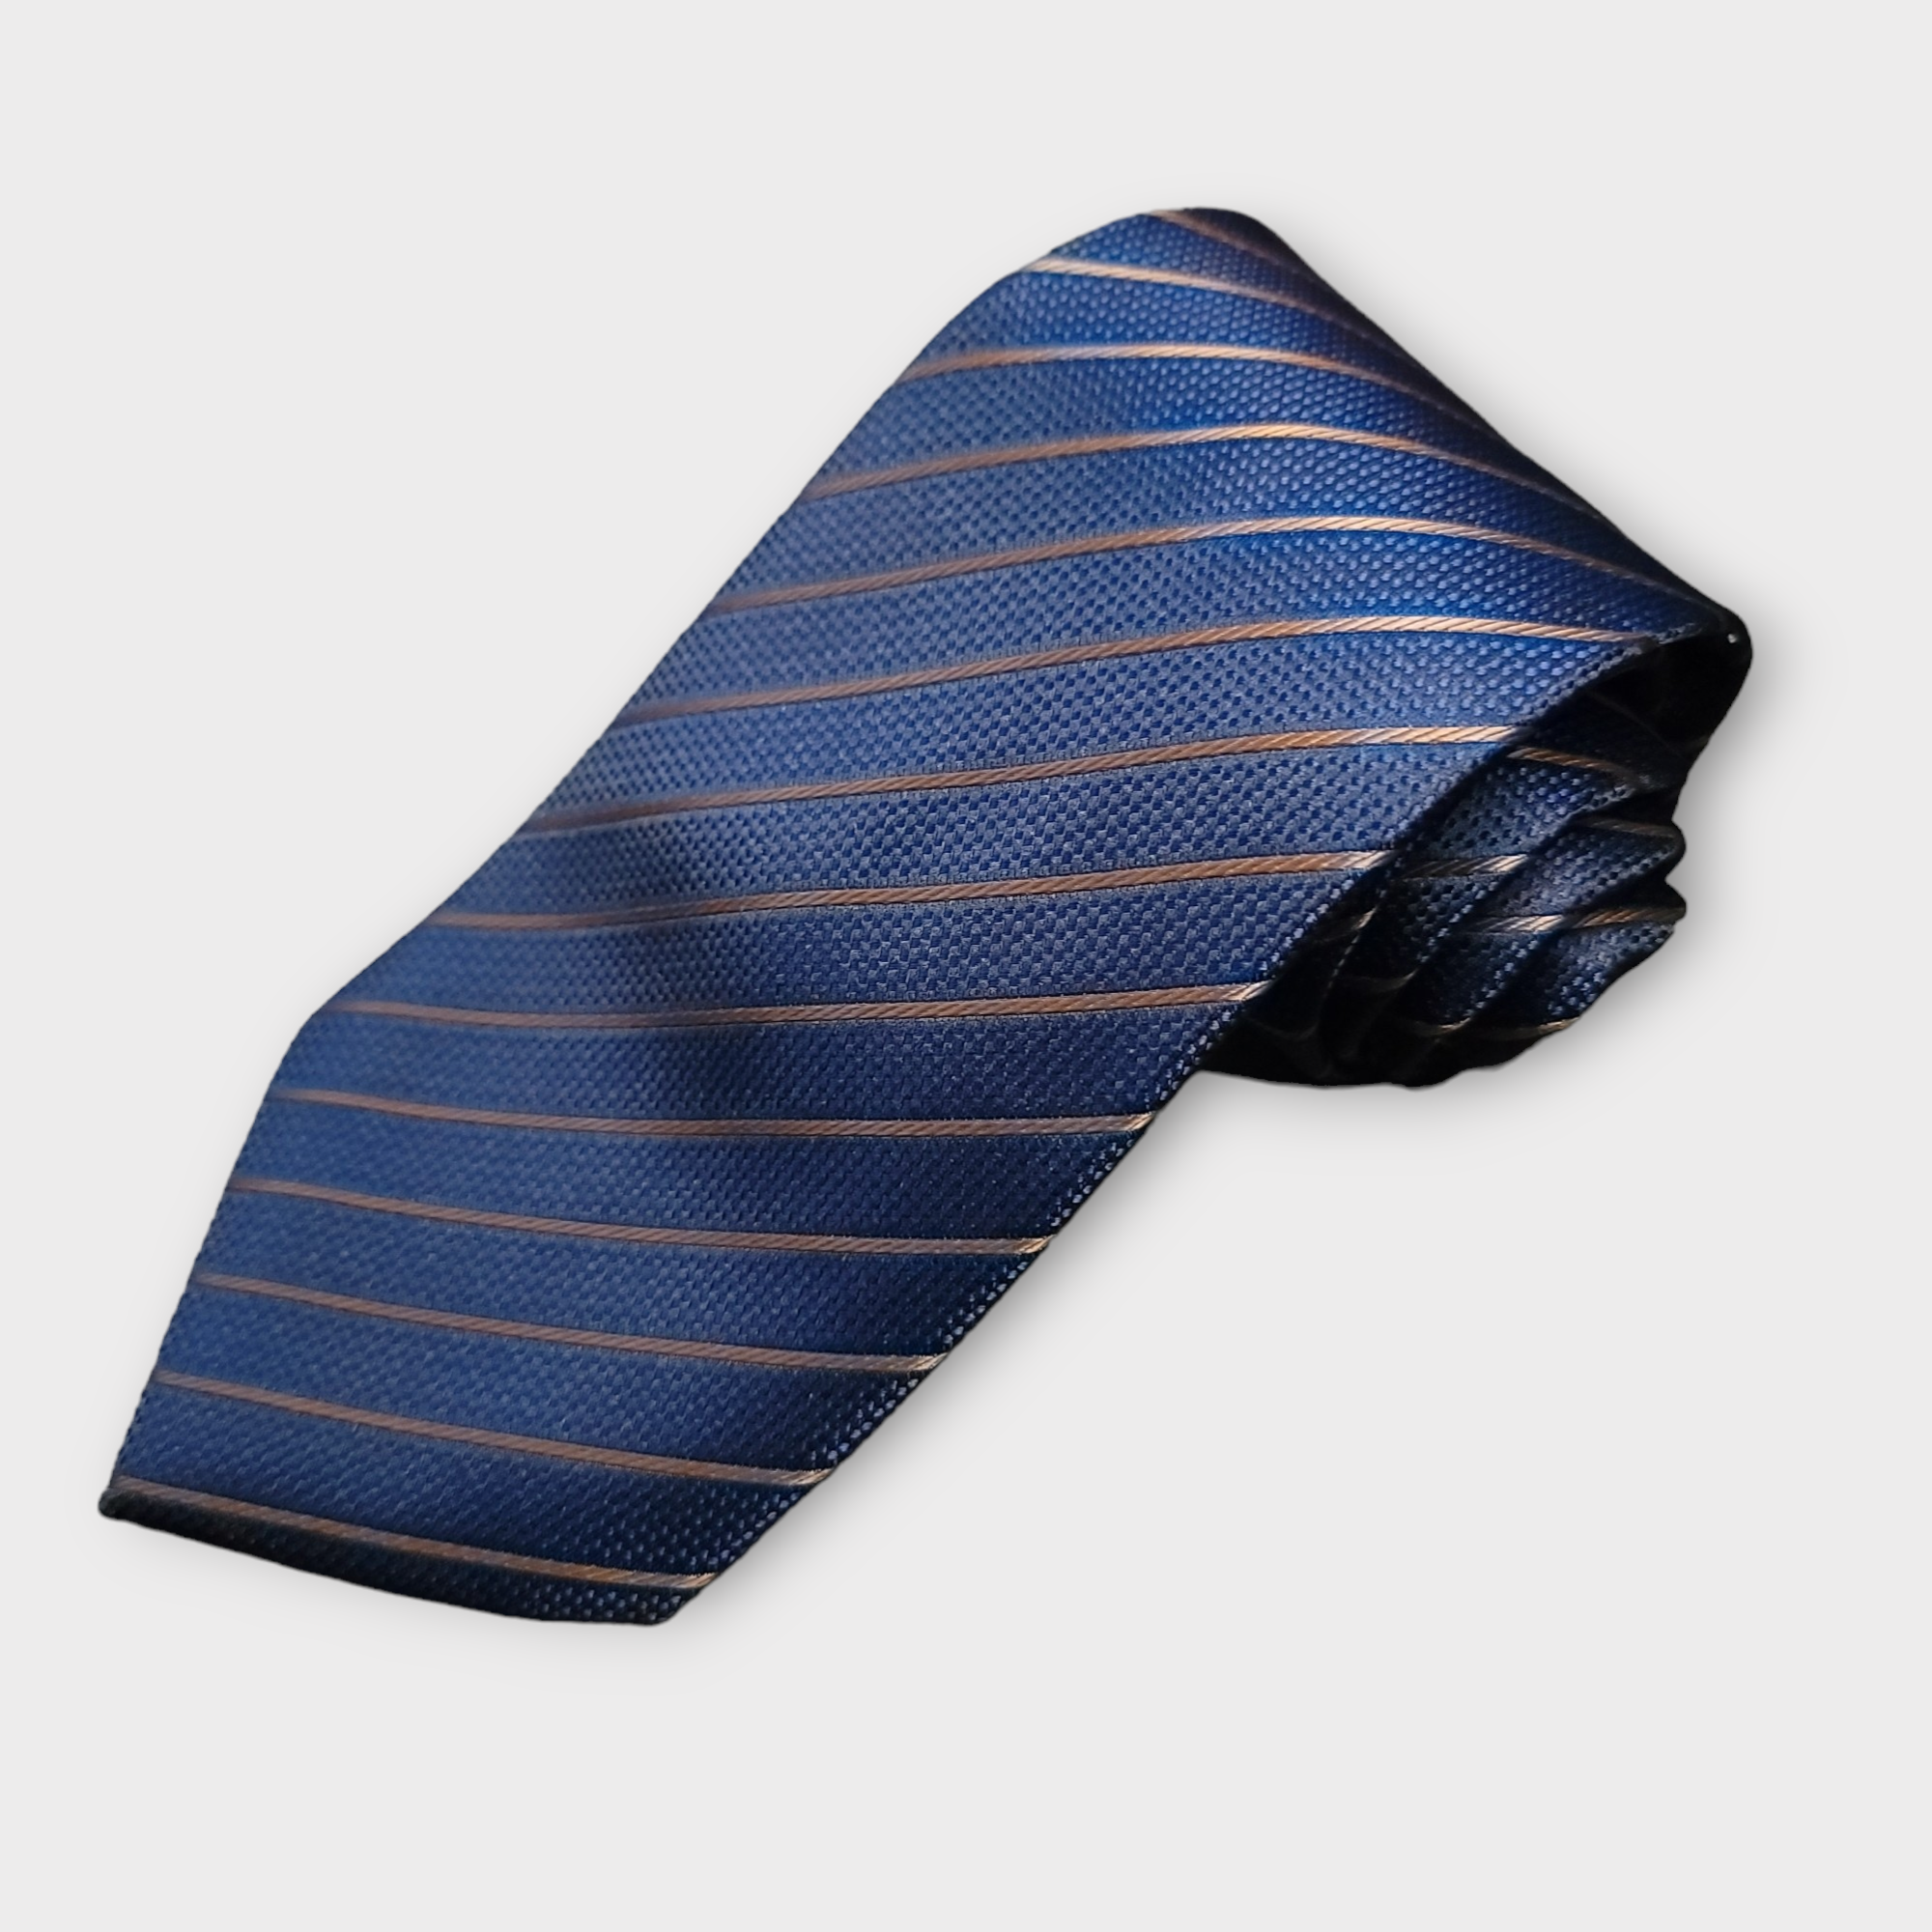 Gold Navy Striped Silk Tie Pocket Square Cufflink Set